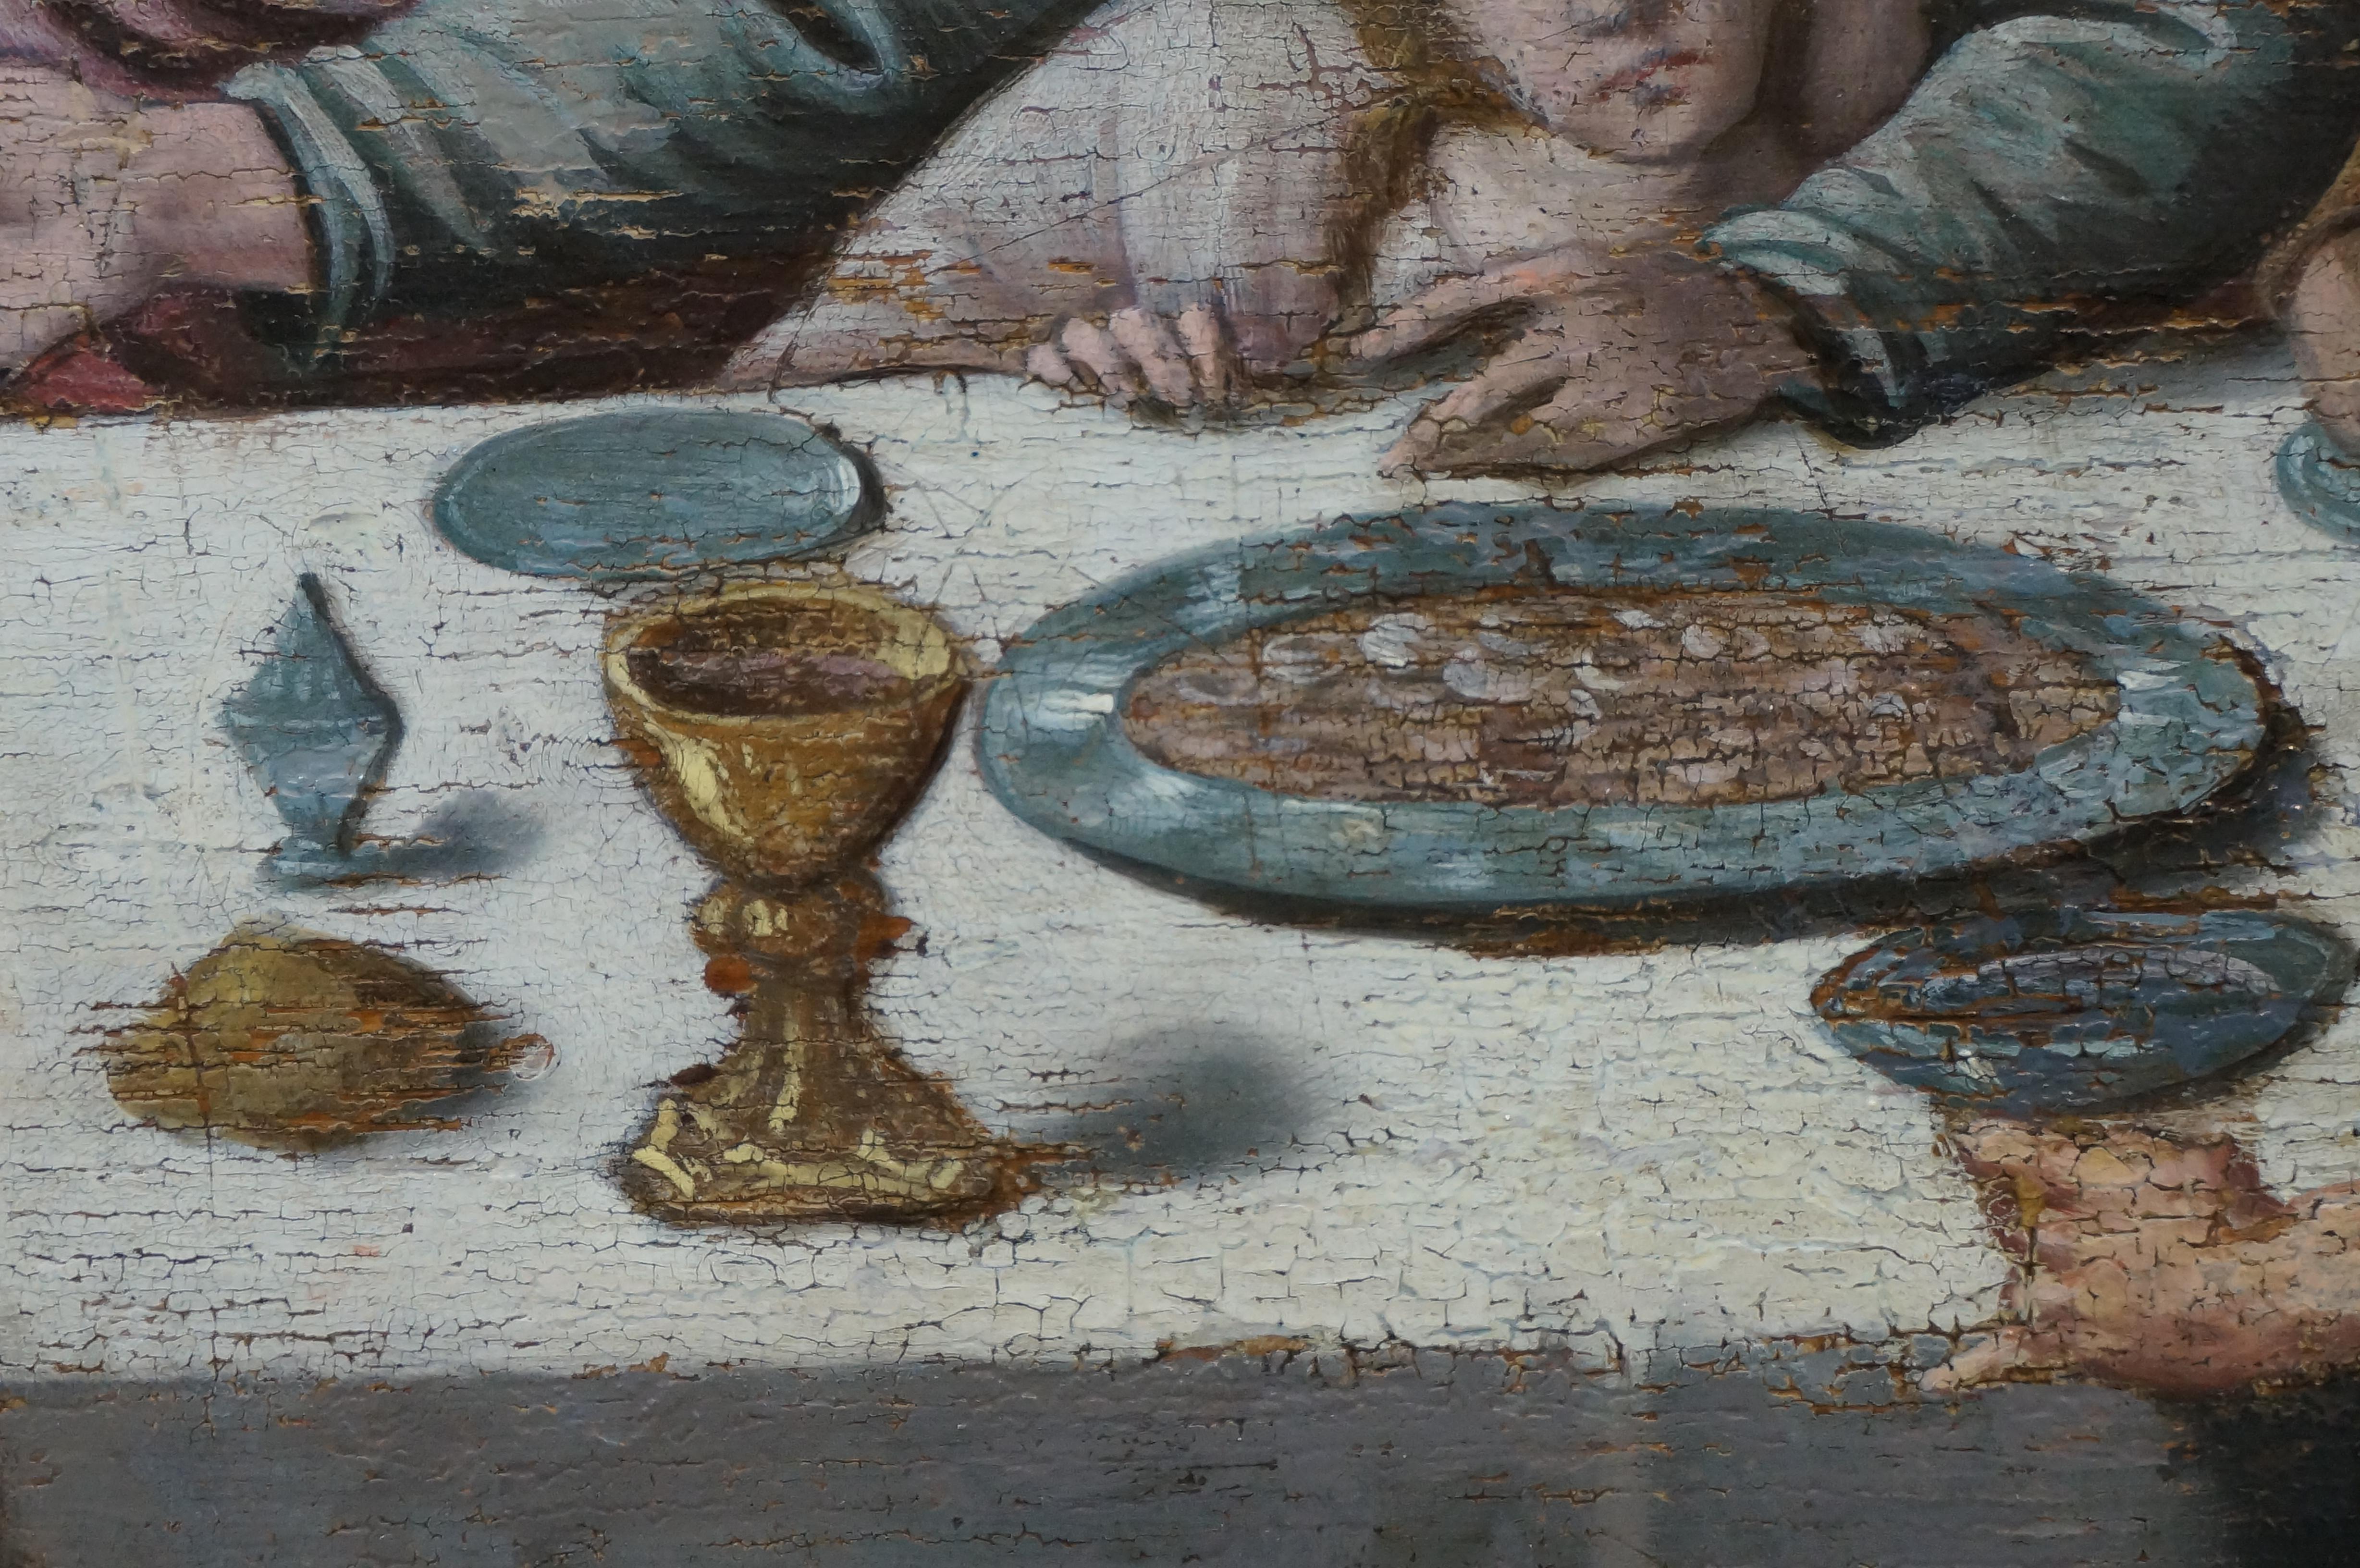 Anrique oil painting, Last Supper, German school, Renaissance, Late 16th c. 3